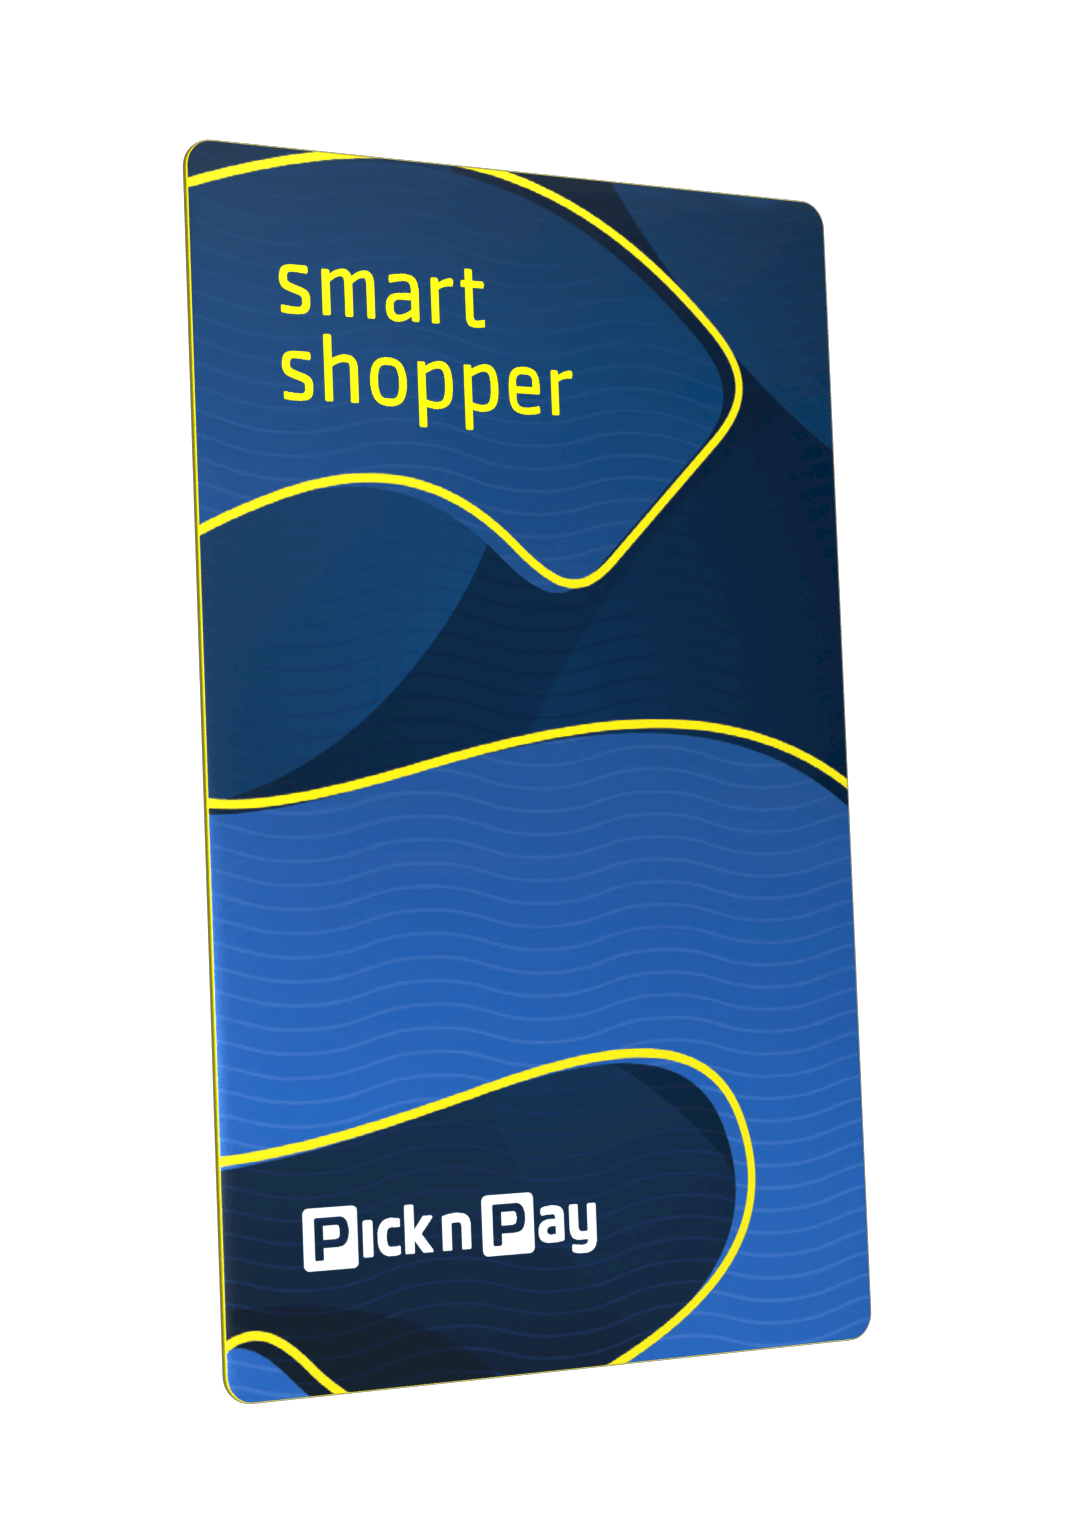 Smart shopper card